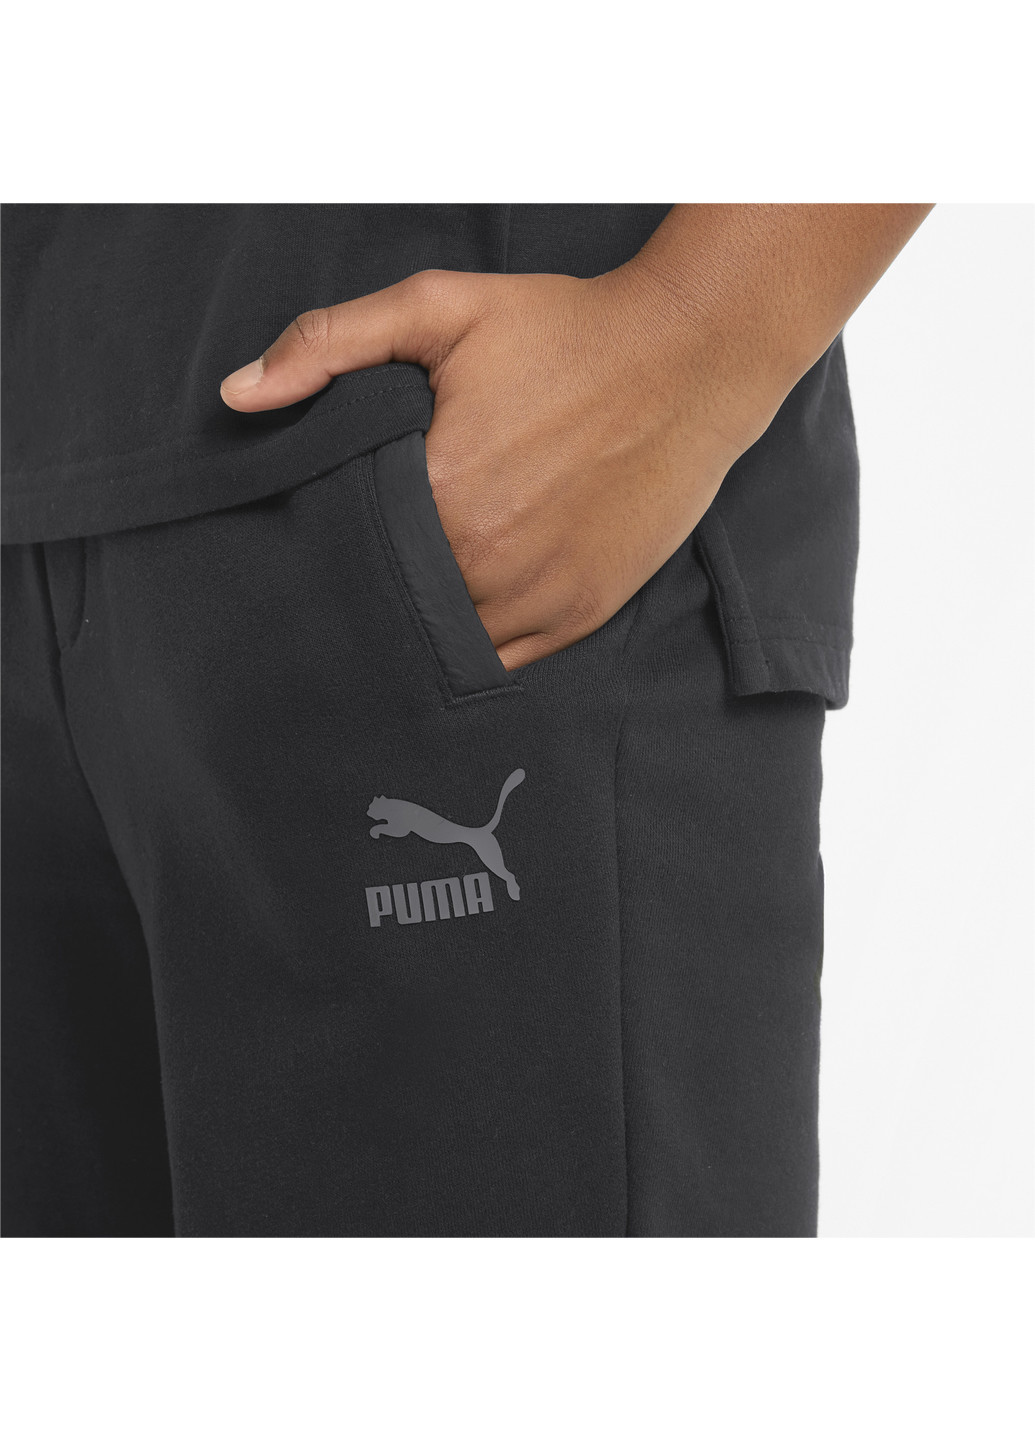 Детские шорты MATCHERS Youth Shorts Puma однотонные чёрные спортивные хлопок, нейлон, полиэстер